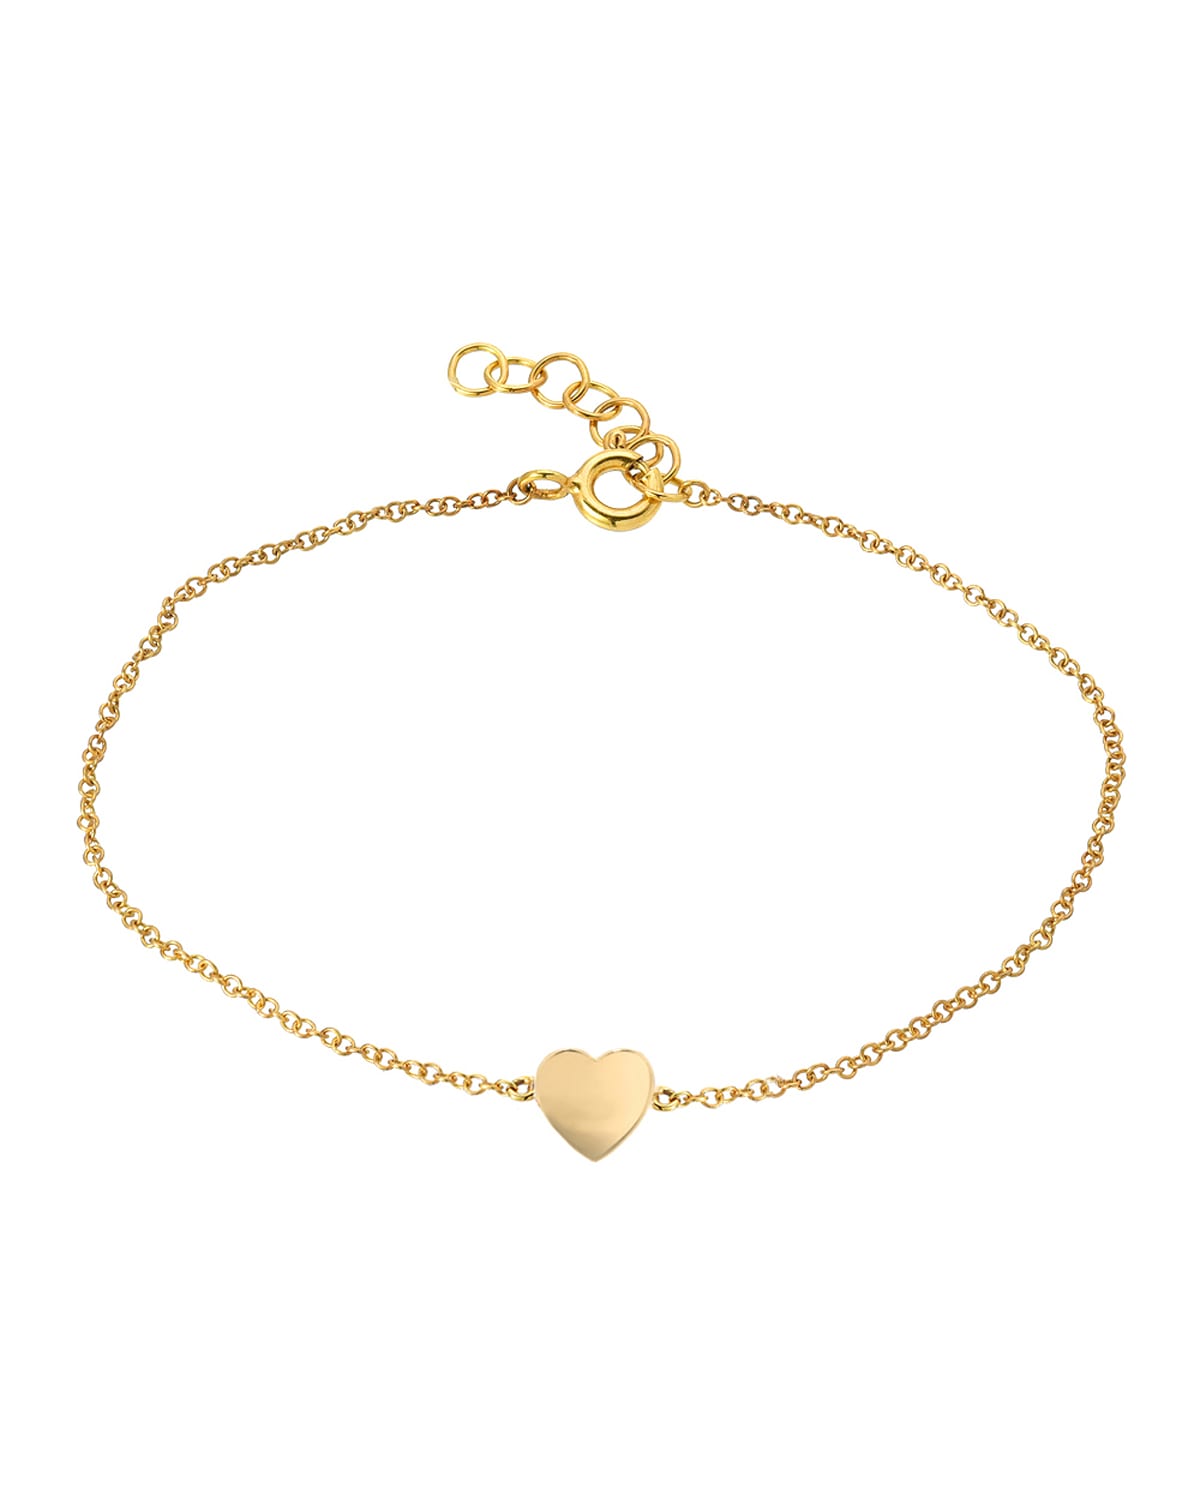 Zoe Lev Jewelry 14k Gold Heart Bracelet